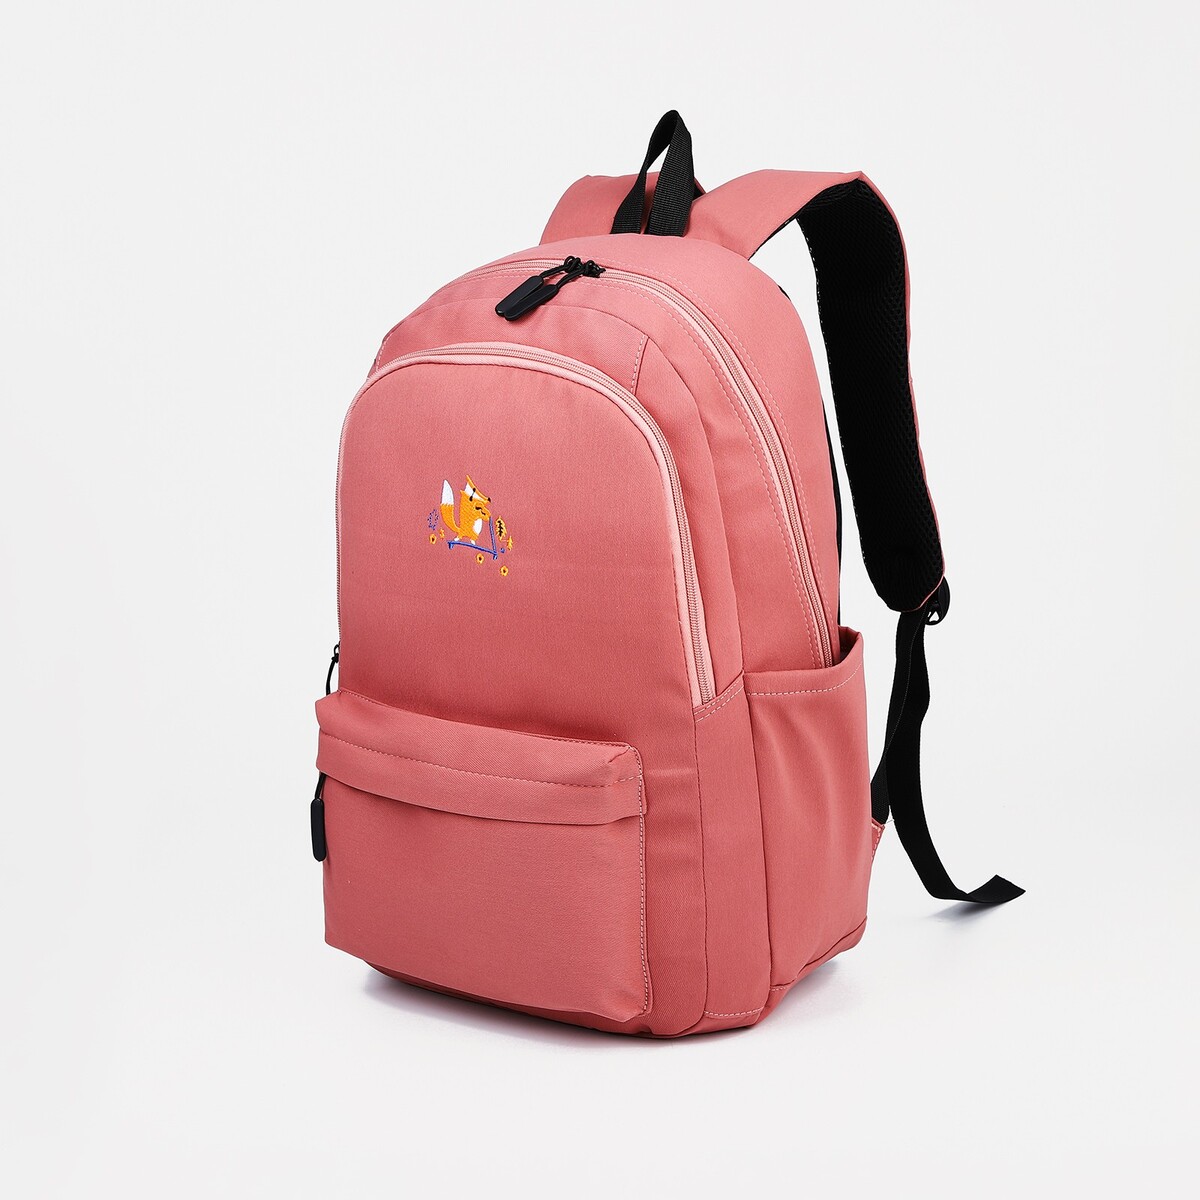 Рюкзак молодежный из текстиля, 2 отдела на молниях, 3 кармана, цвет розовый косметичка 2 отдела на молниях фиолетовый